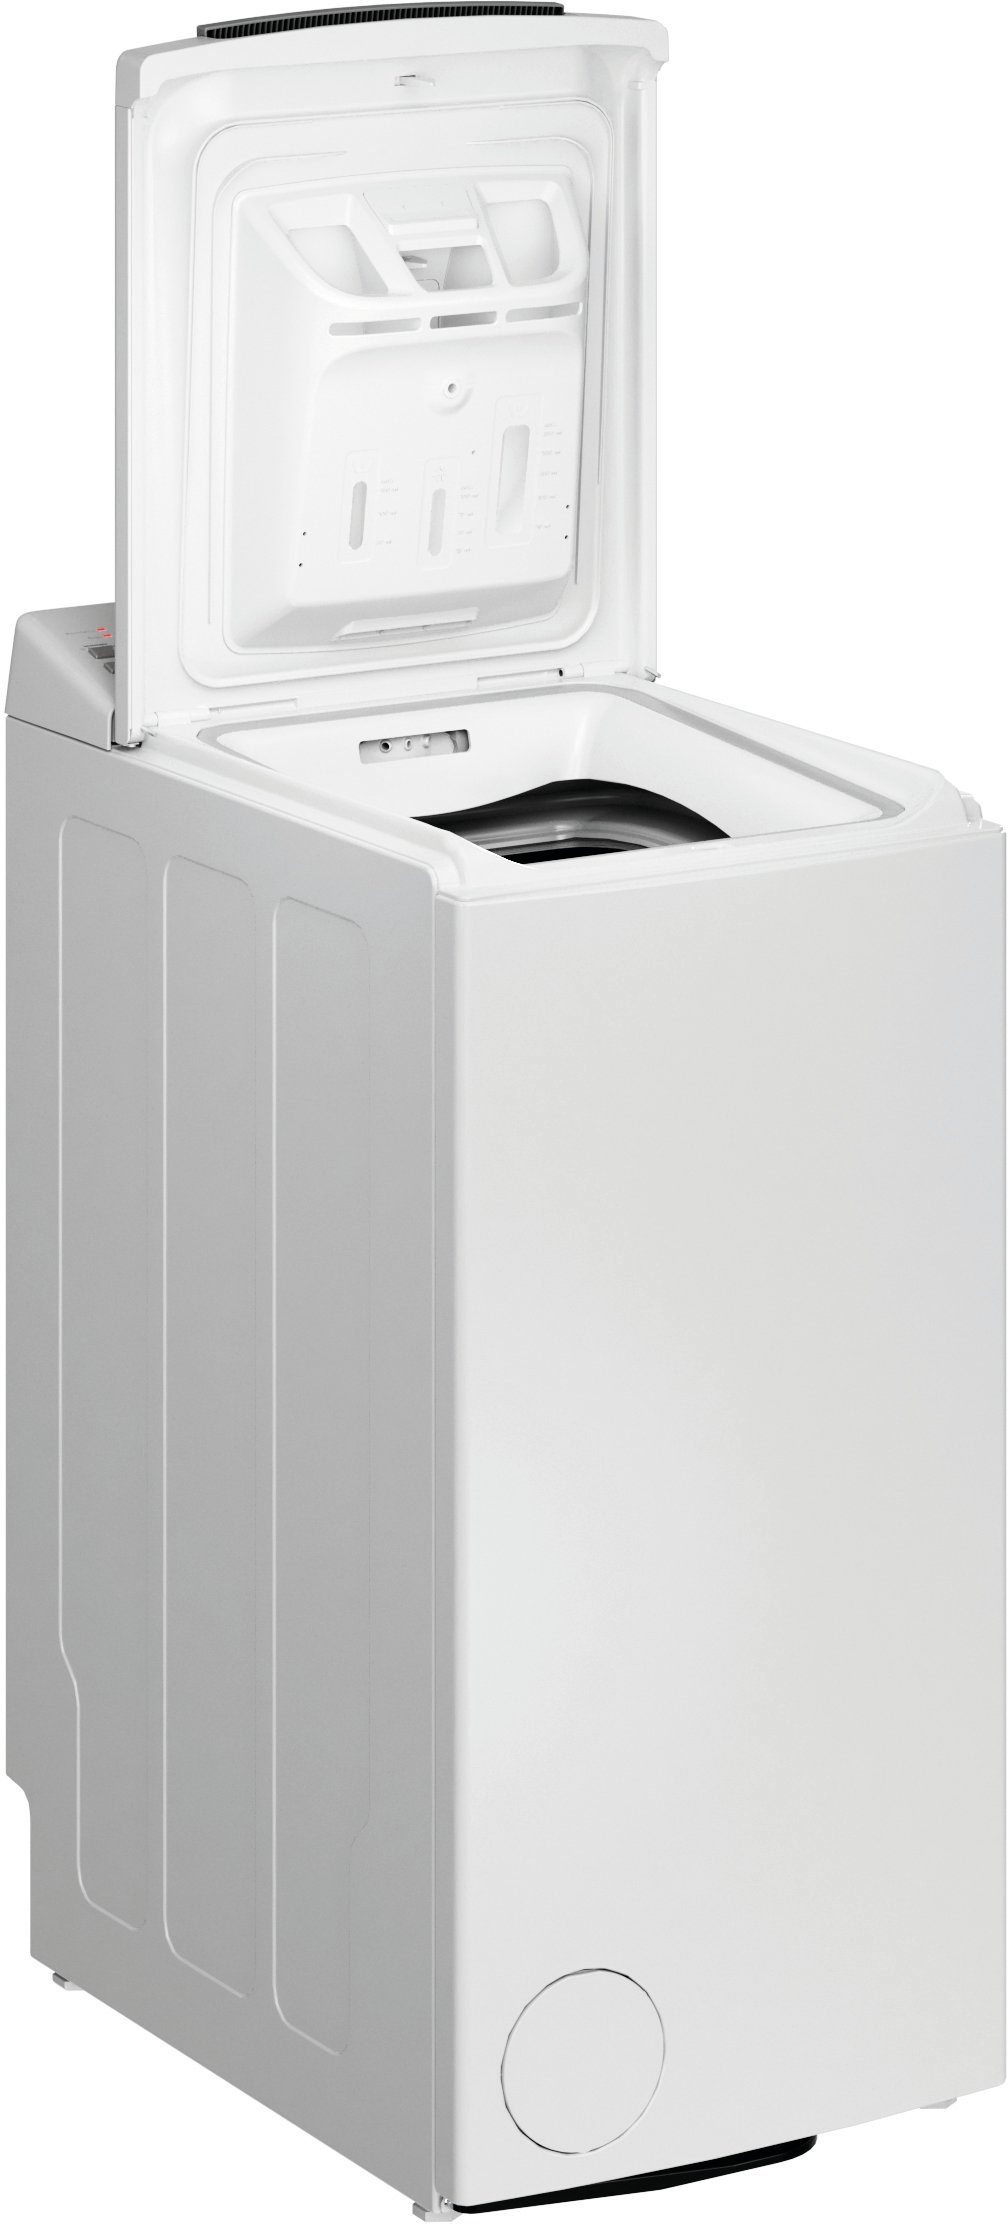 BAUKNECHT Waschmaschine Toplader WMT 6513 CC, 6,5 kg, 1200 U/min, 4 Jahre  Herstellergarantie online kaufen | OTTO